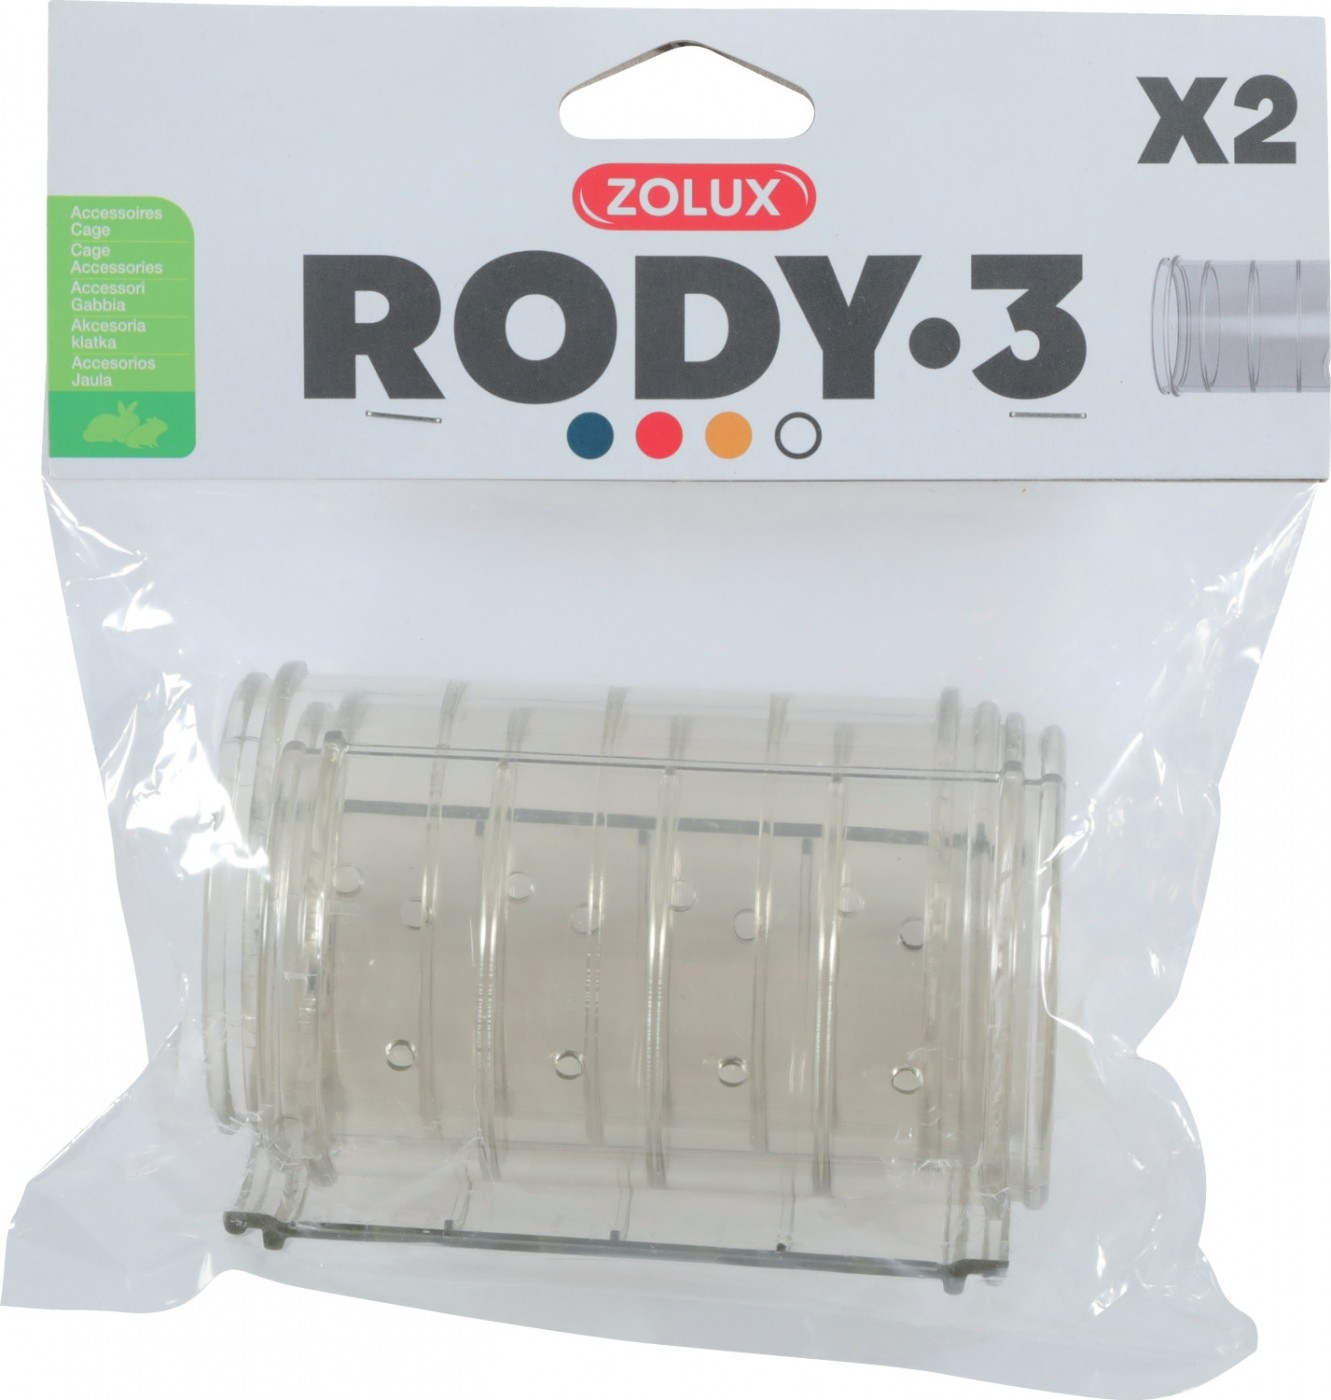 Conjunto de 2 tubos rectos para extensão da gaiola Rody3 cinza transparente